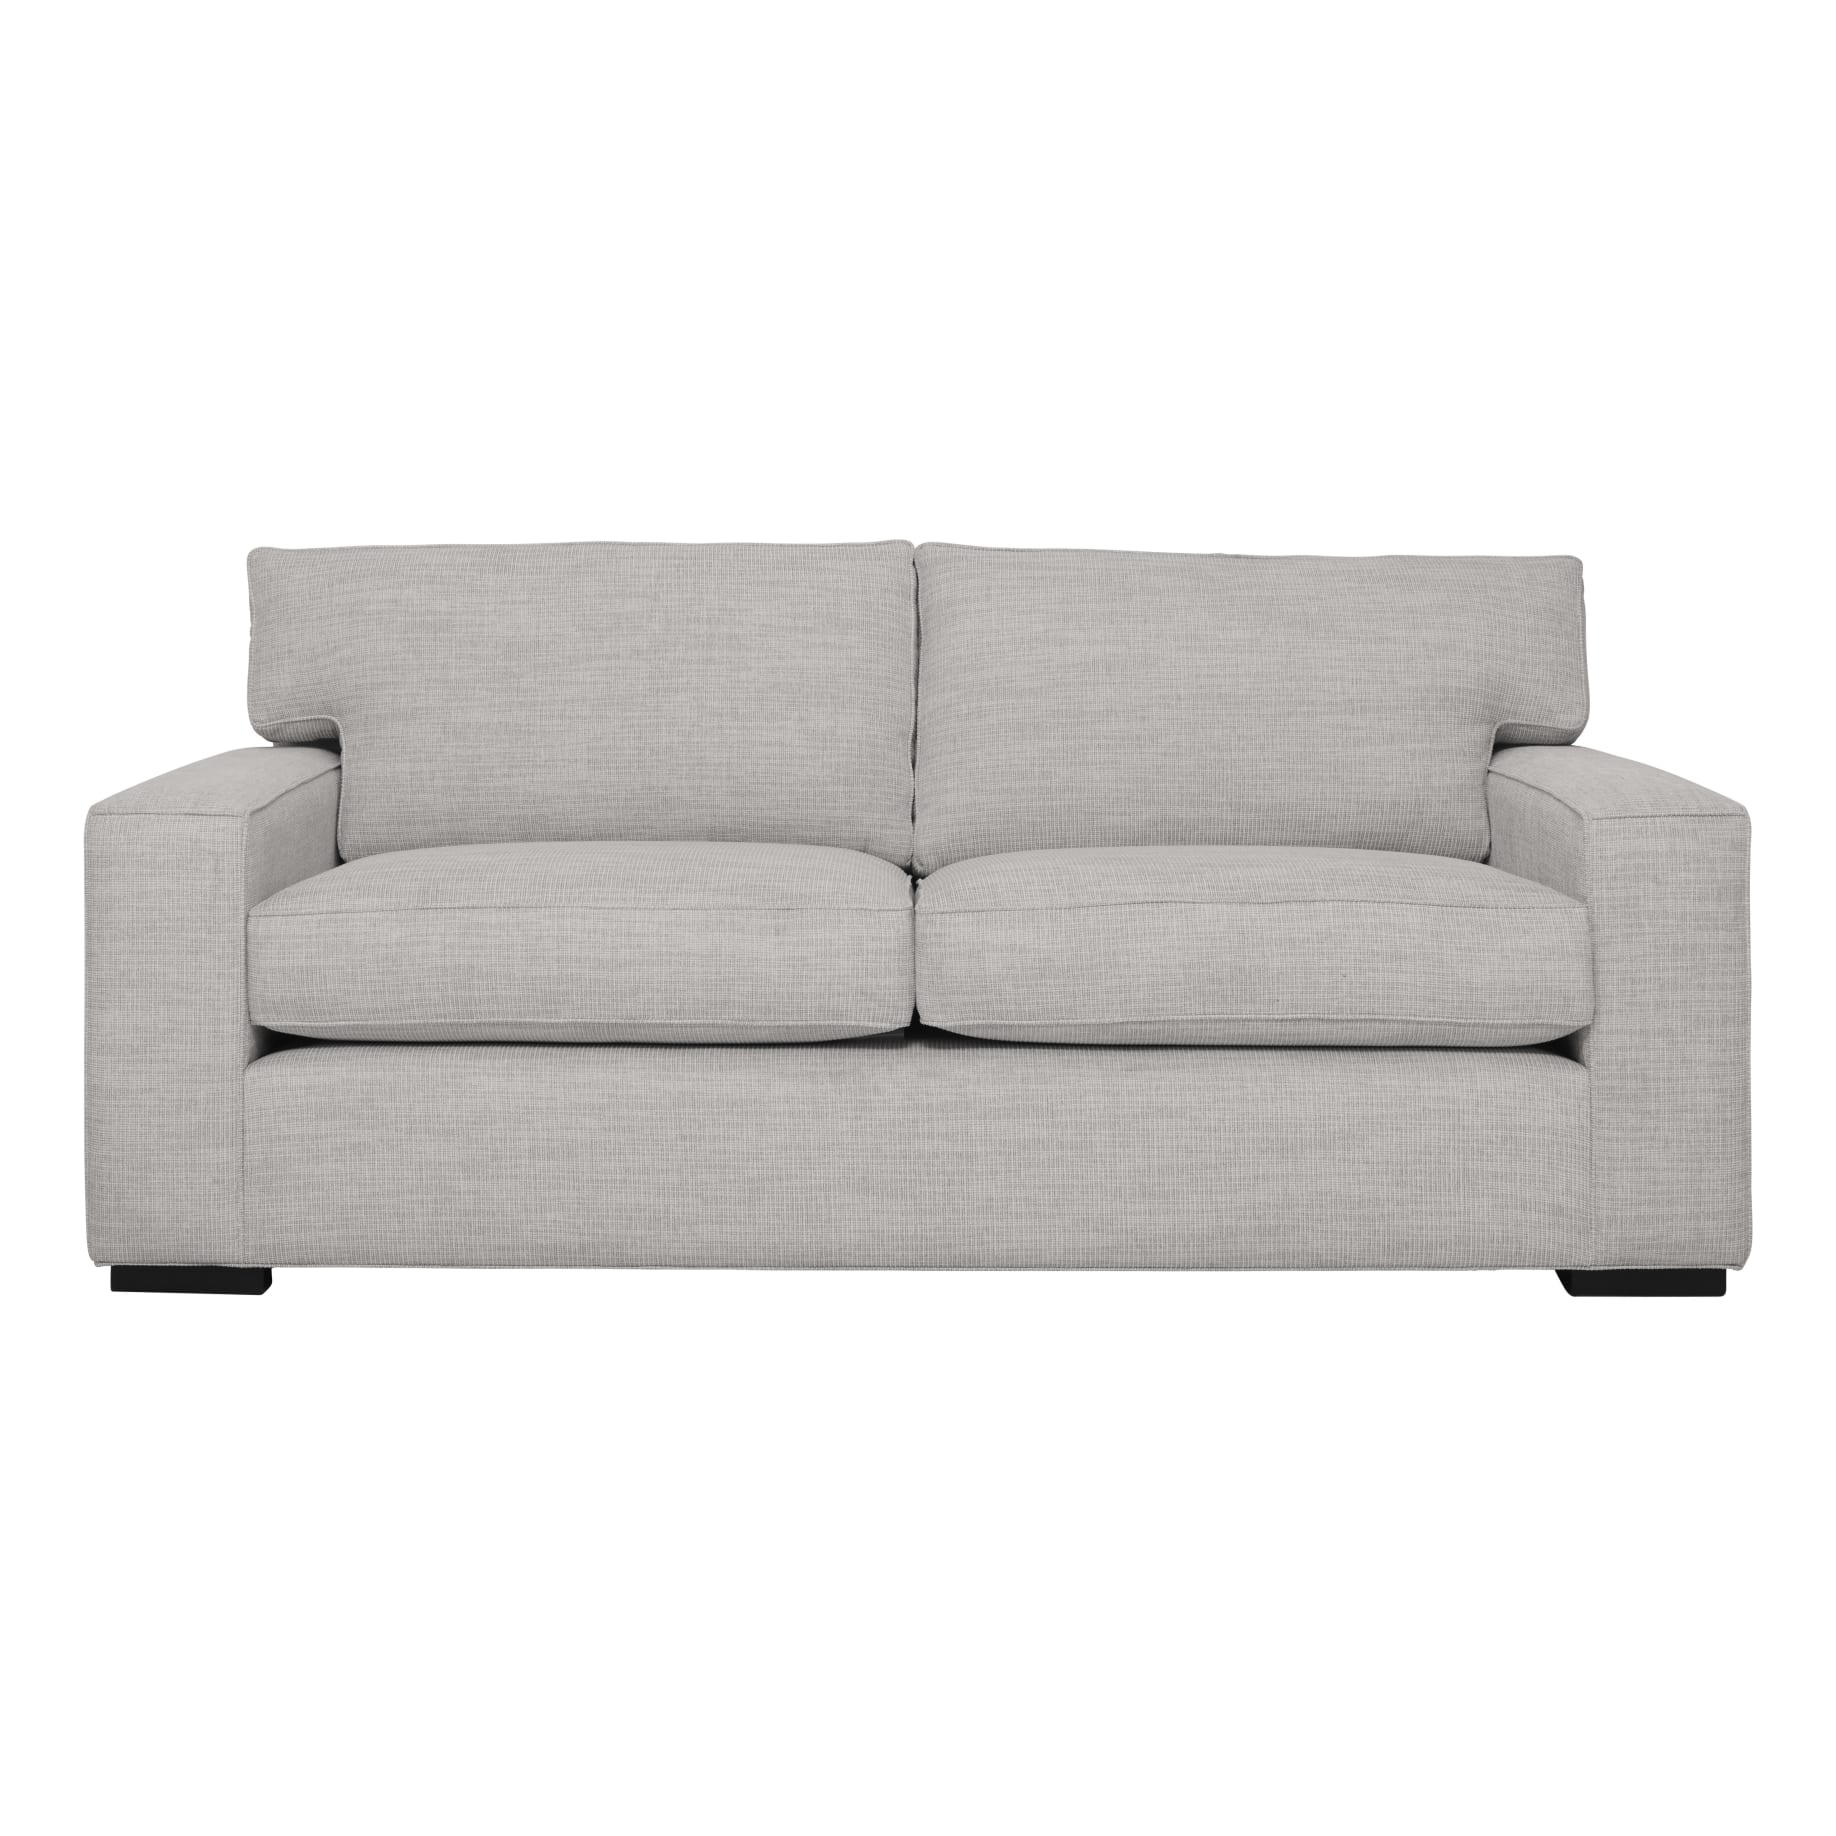 Ashton 2.5 Seater Sofa in Selected Fabrics